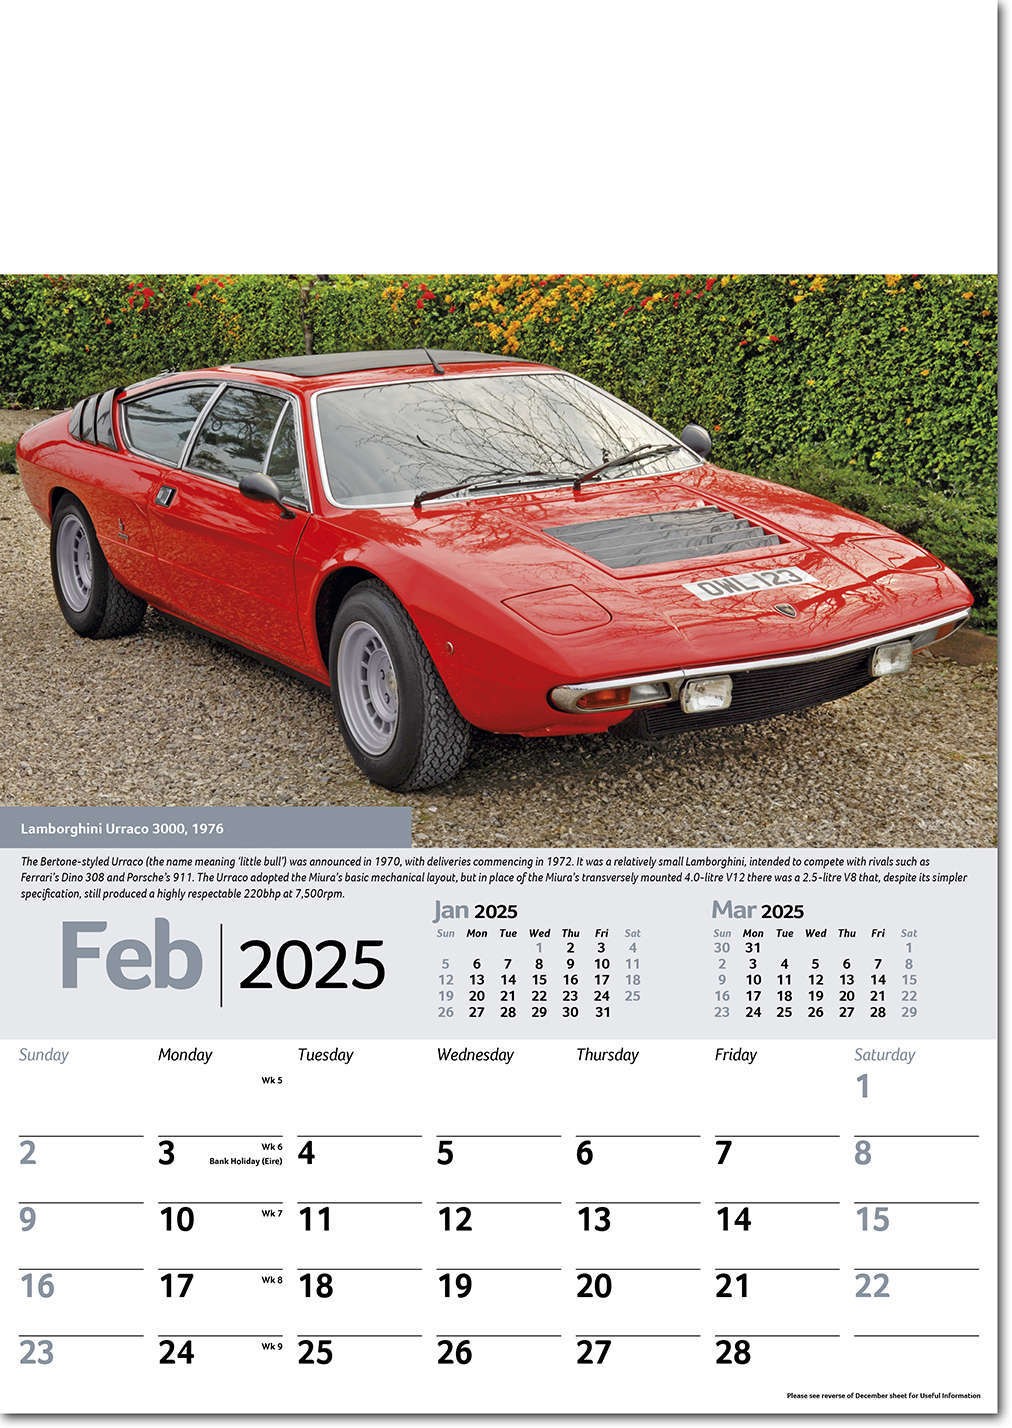 Collectors Cars Calendar